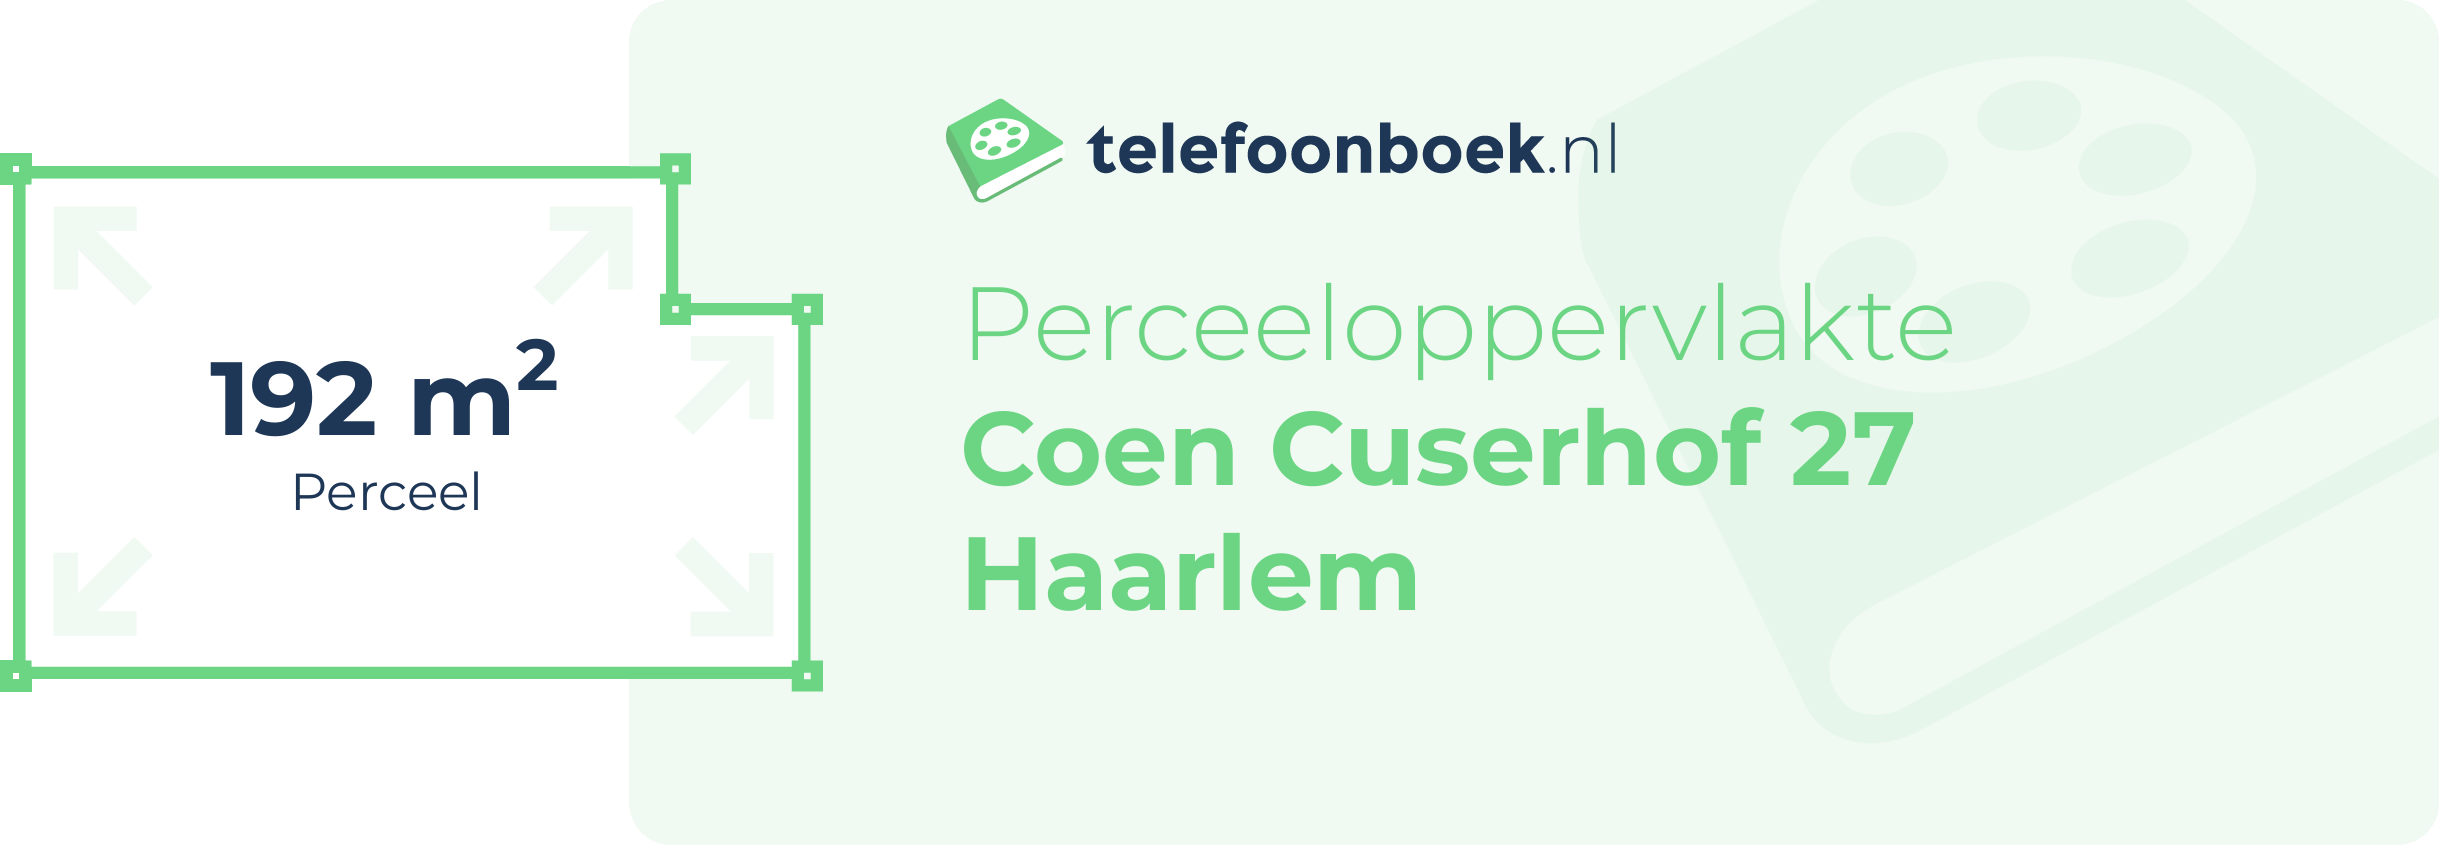 Perceeloppervlakte Coen Cuserhof 27 Haarlem